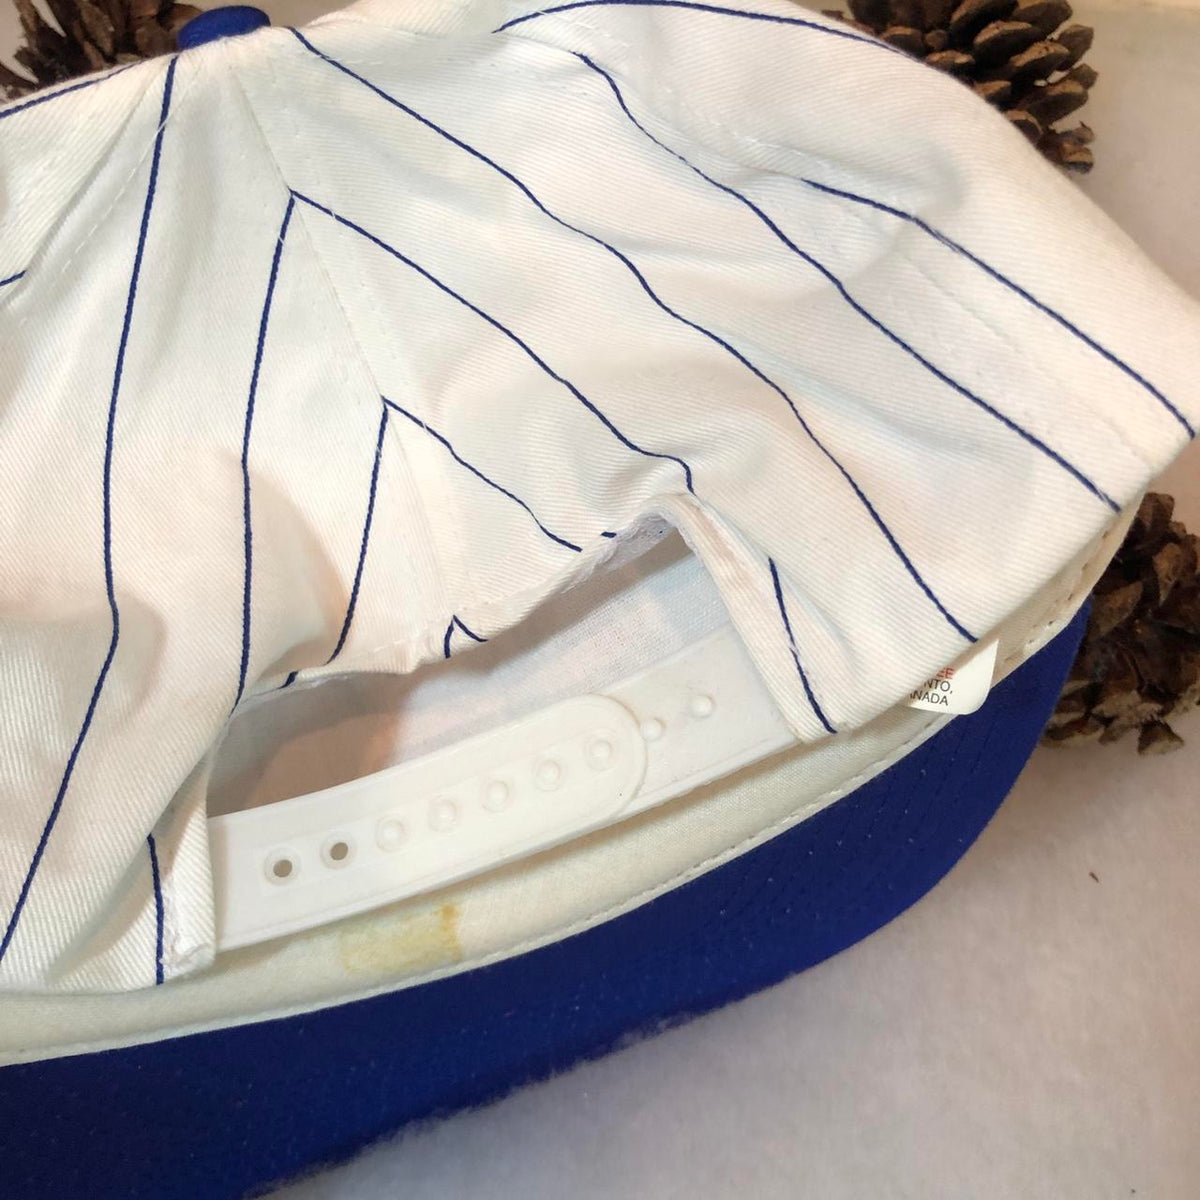 Vintage MLB Toronto Blue Jays CKGL 570 Radio Pinstripe Snapback Hat – 🎅  Bad Santa